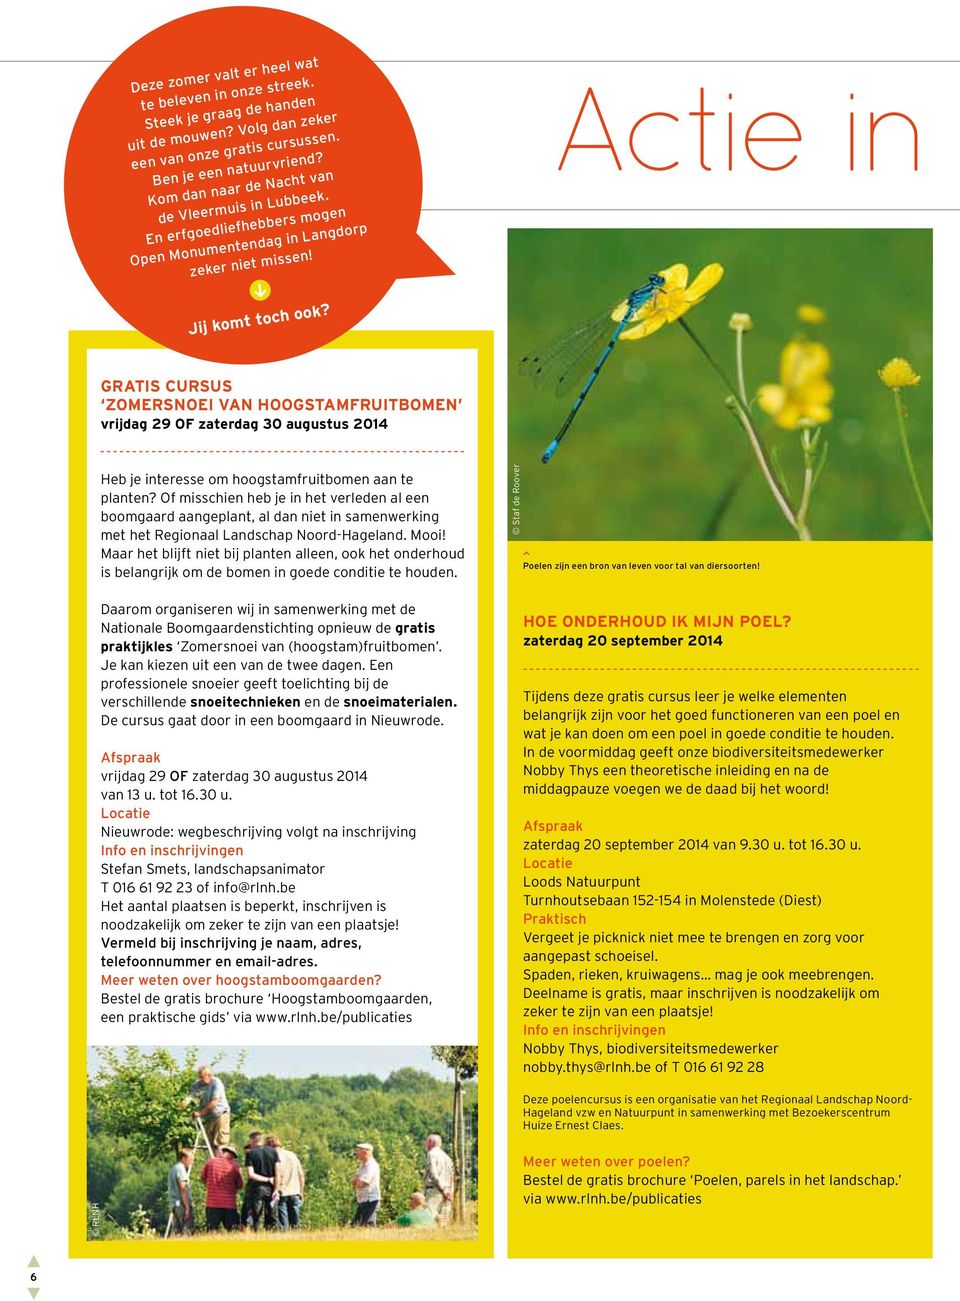 Gatis cusus zomesnoei van hoogstamfuitbomen vijdag 29 OF zatedag 30 augustus 2014 Heb je inteesse om hoogstamfuitbomen aan te planten?